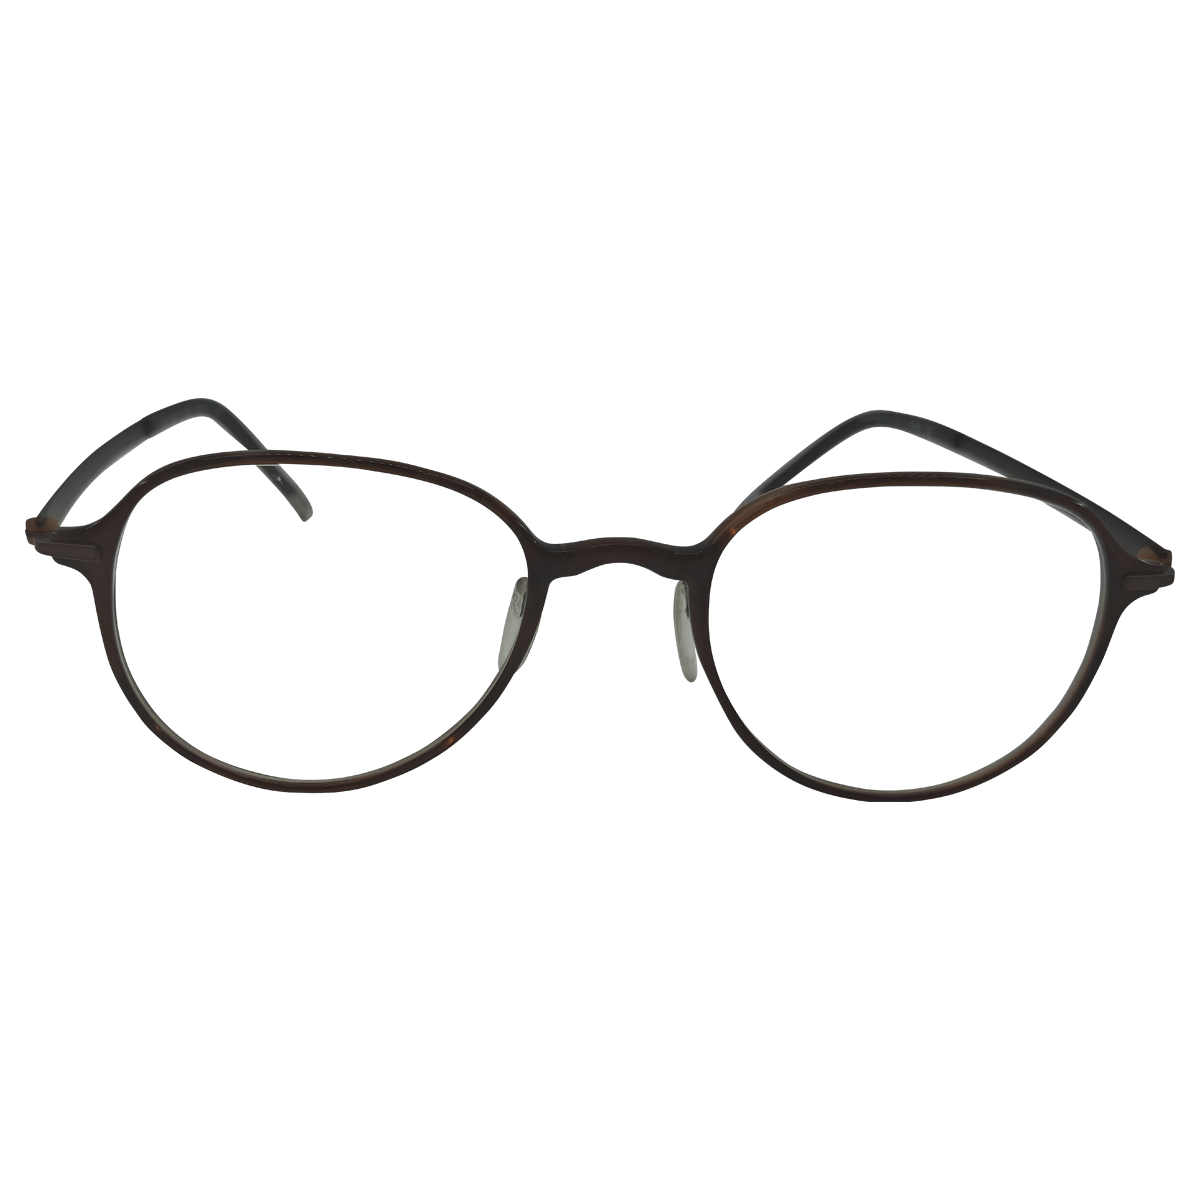 Buy Exclusive silhouette eyeglasses from Nine Optic.